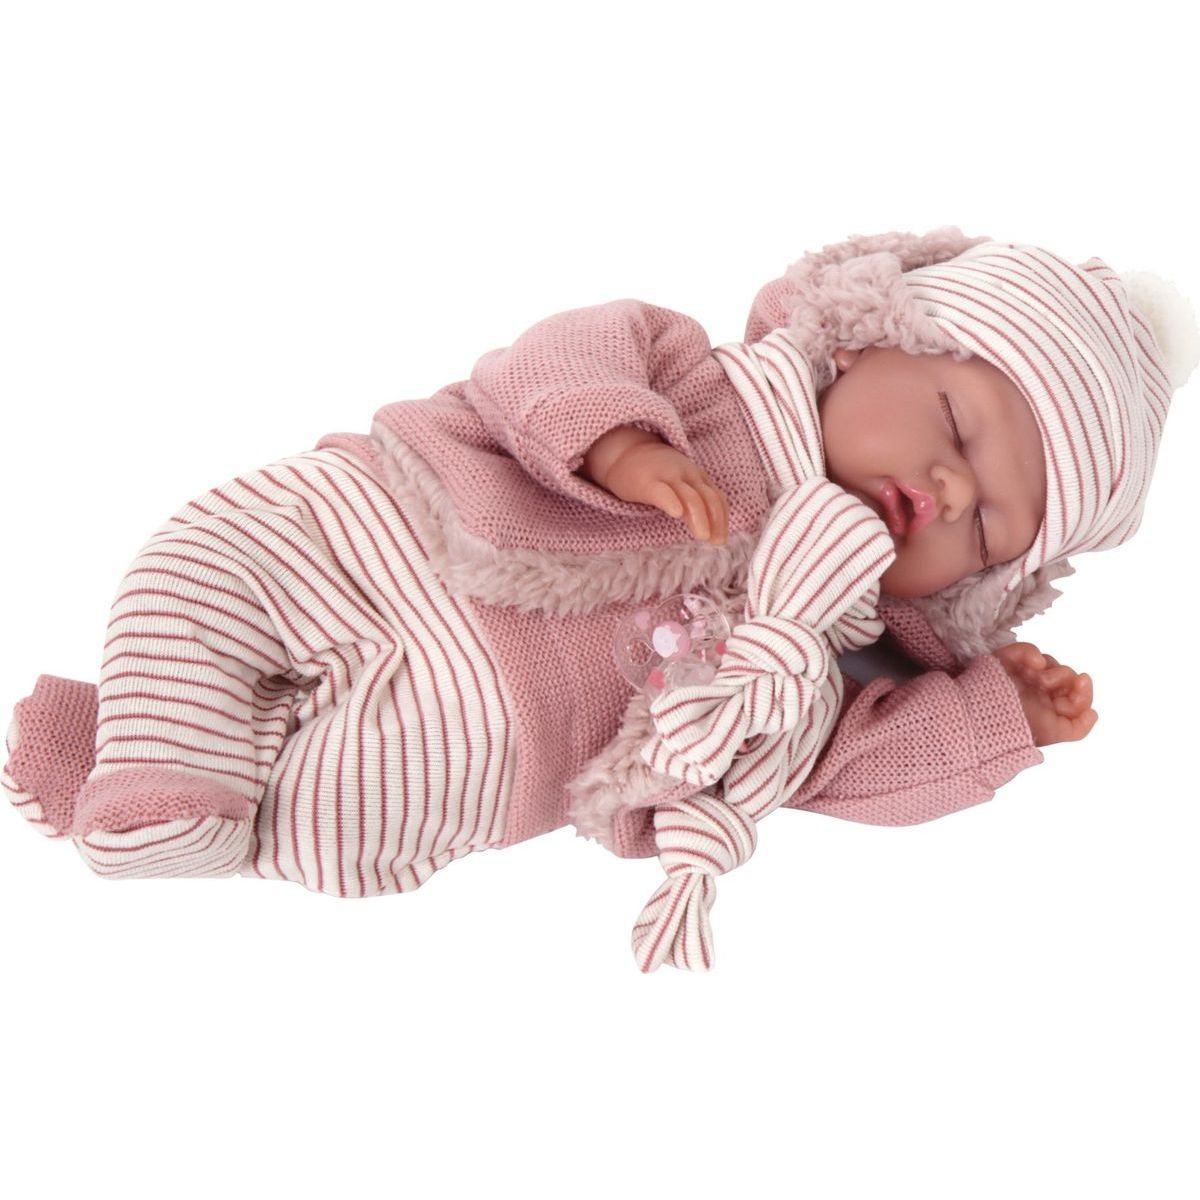 Antonio Juan 1787 Luni spící realistická panenka miminko se speciální pohybovou funkcí a měkkým látkovým tělem 29 cm